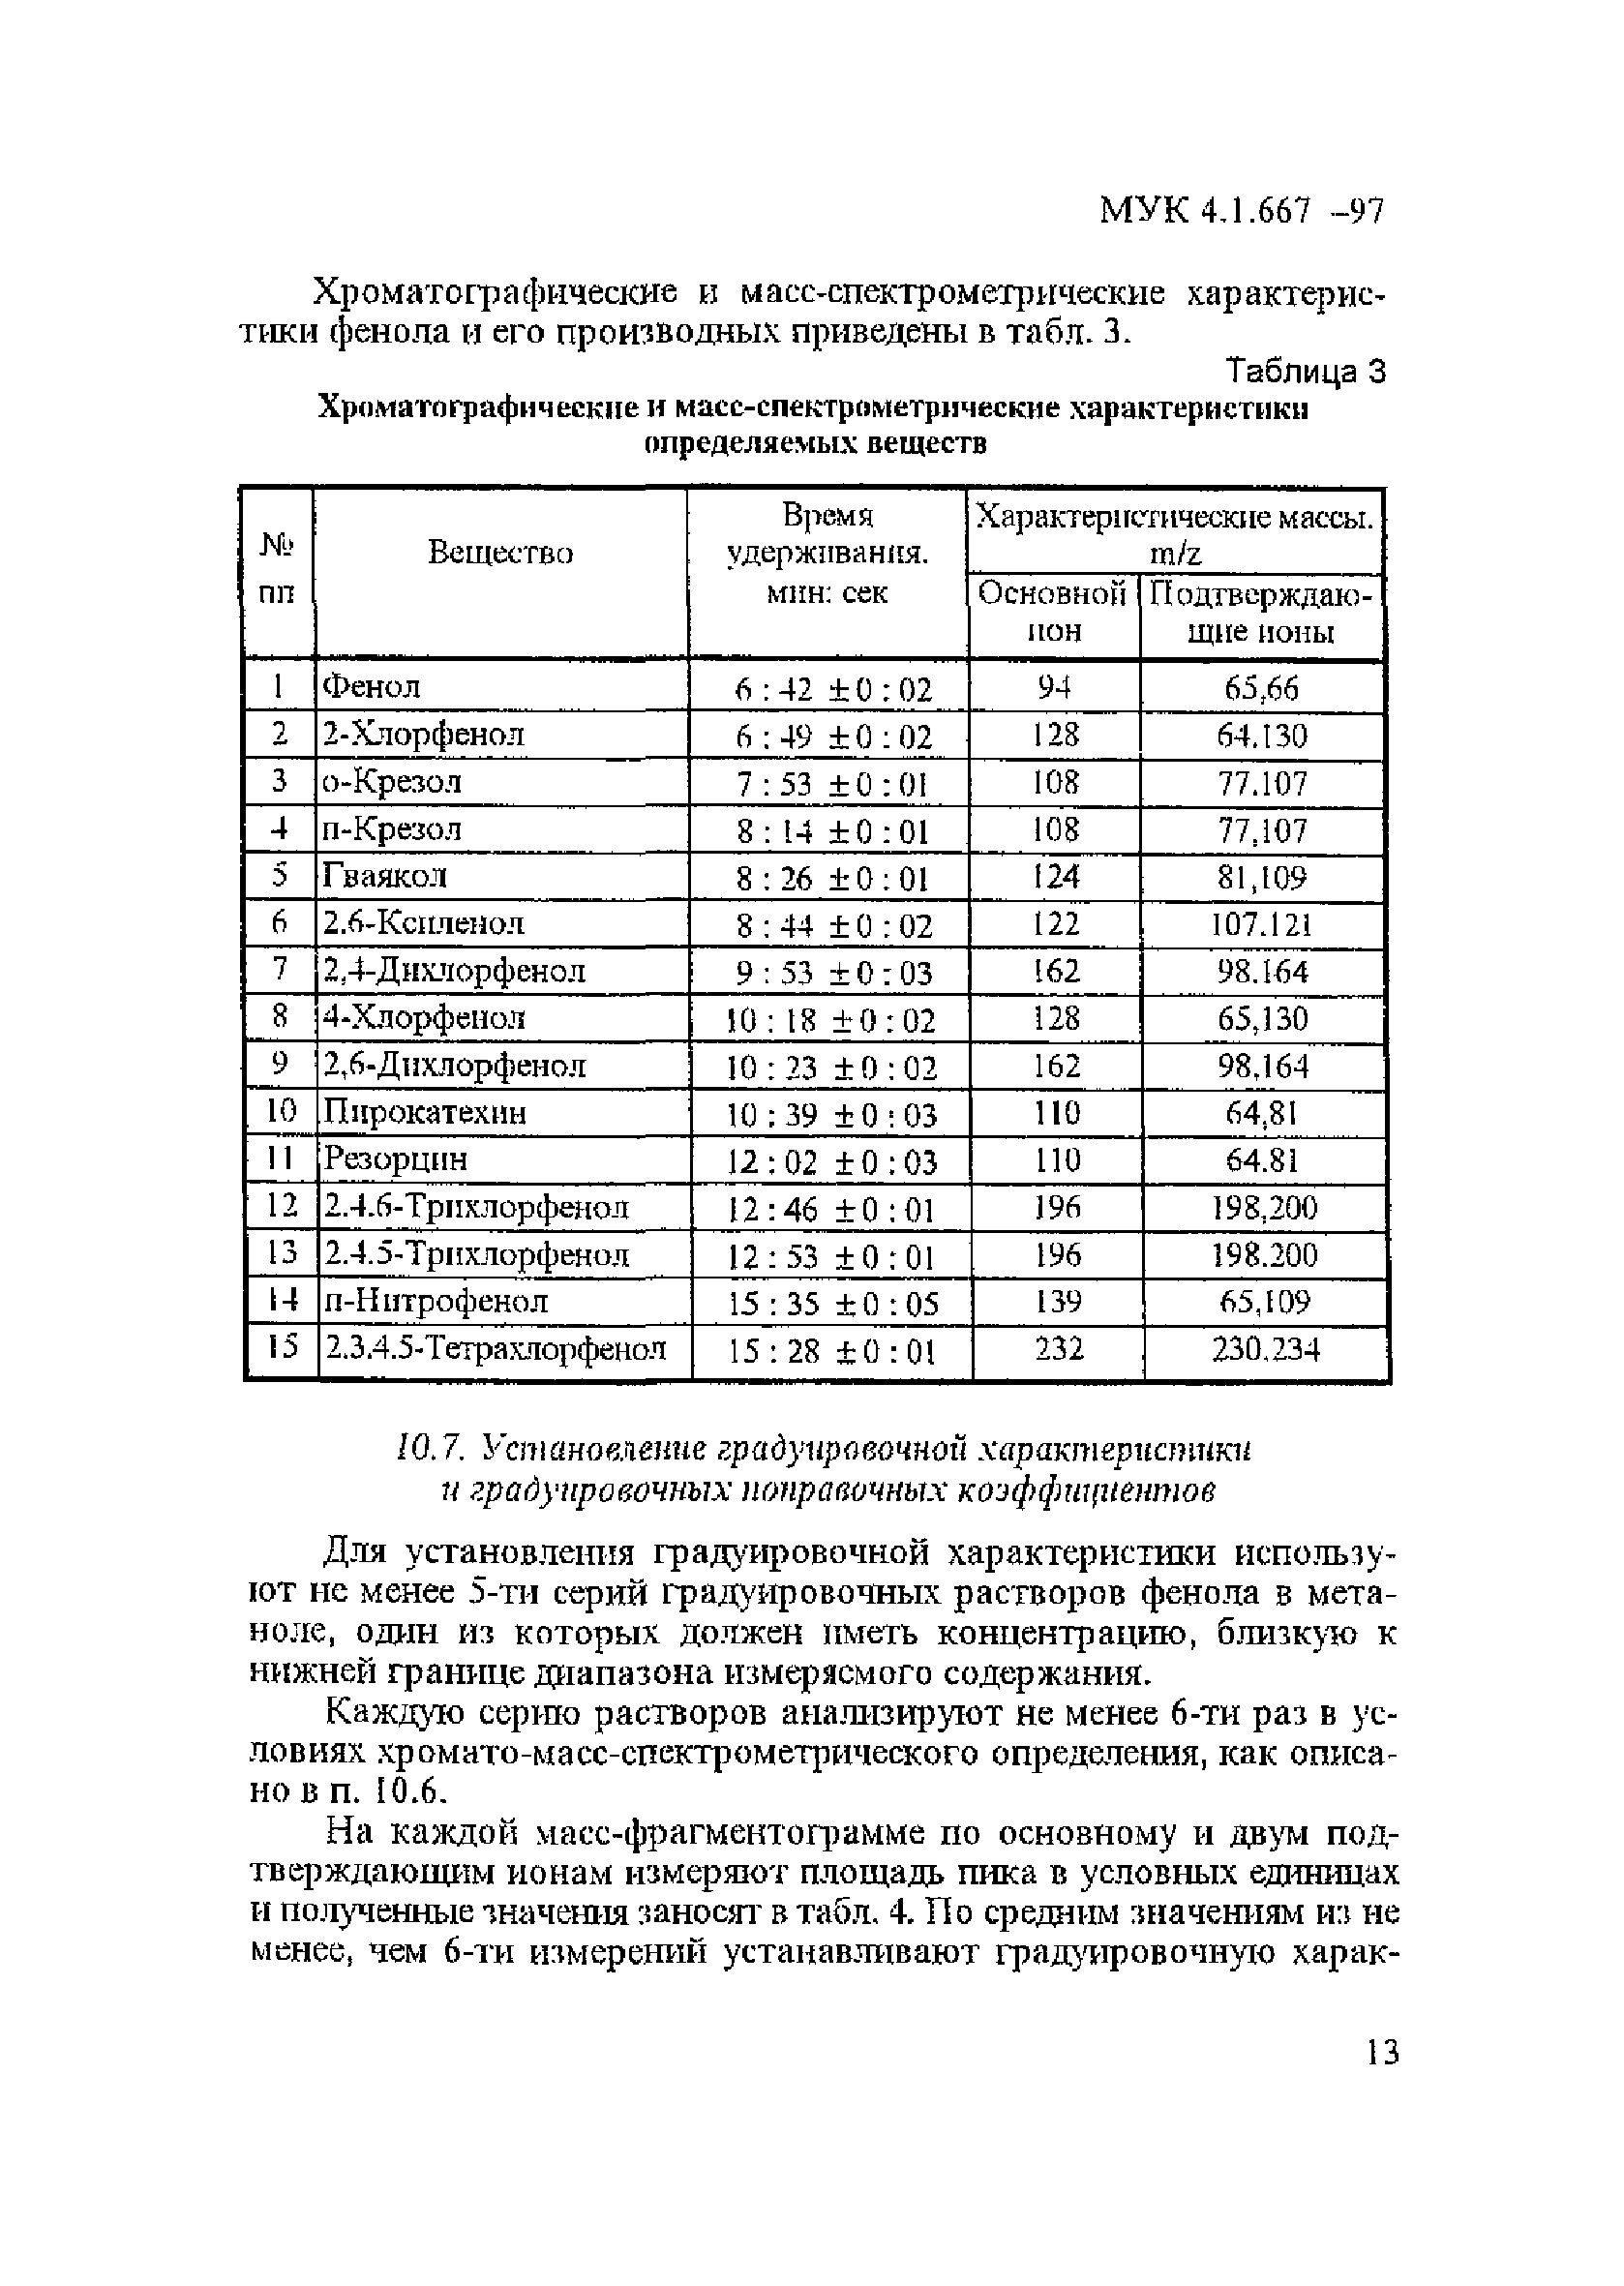 МУК 4.1.667-97